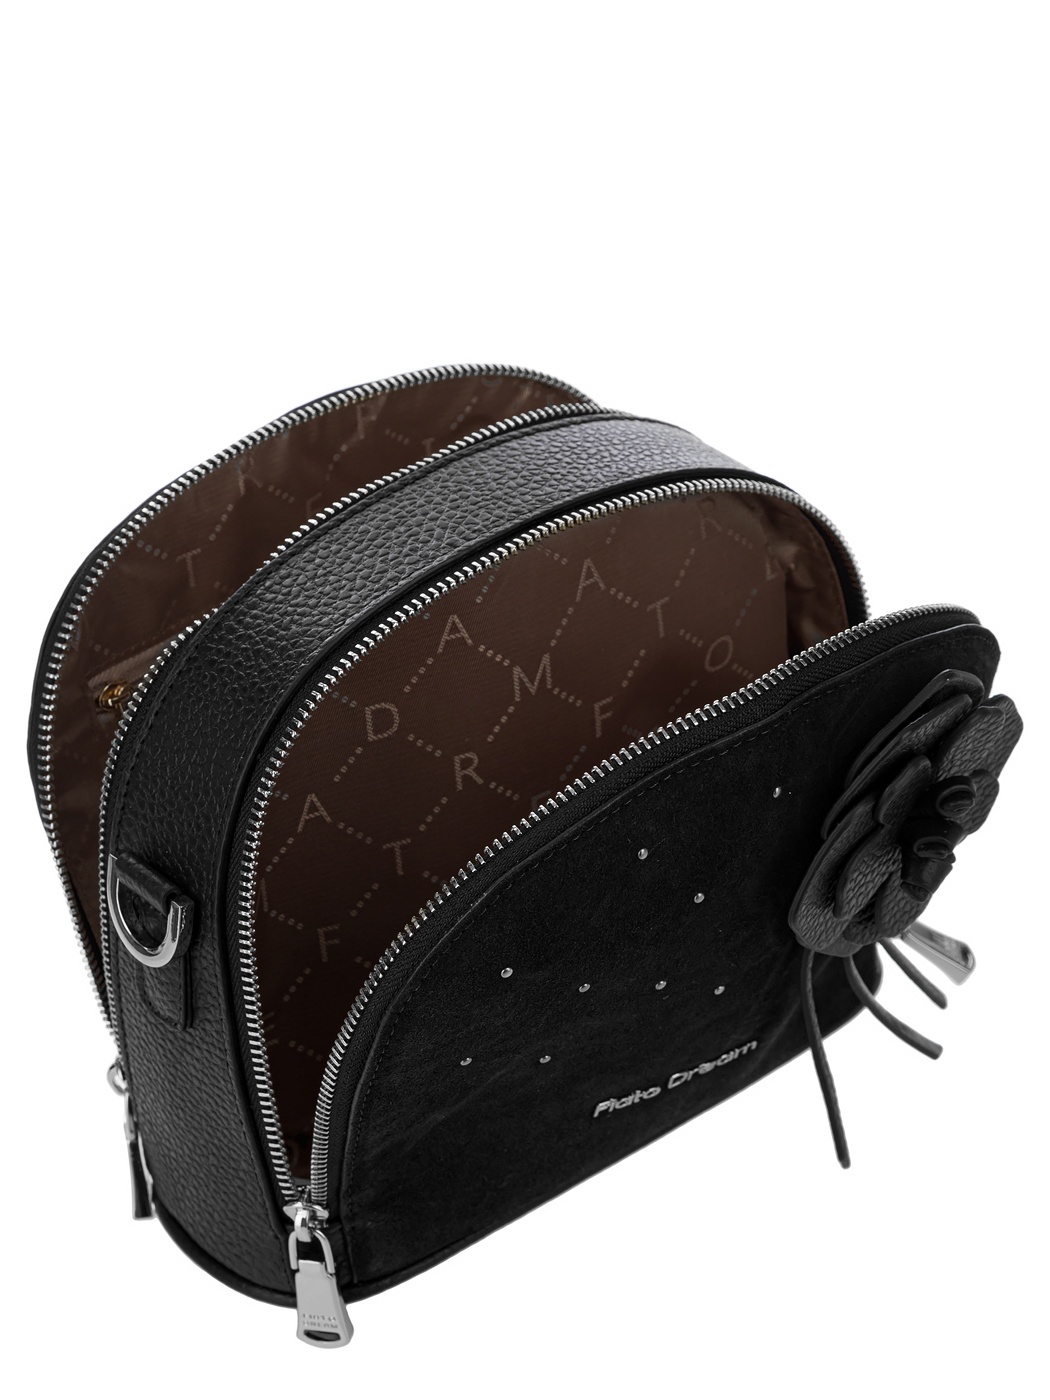 10080 FD черный замша сумка  жен. дем. натуральная кожа/текстиль черный Fiato Dream